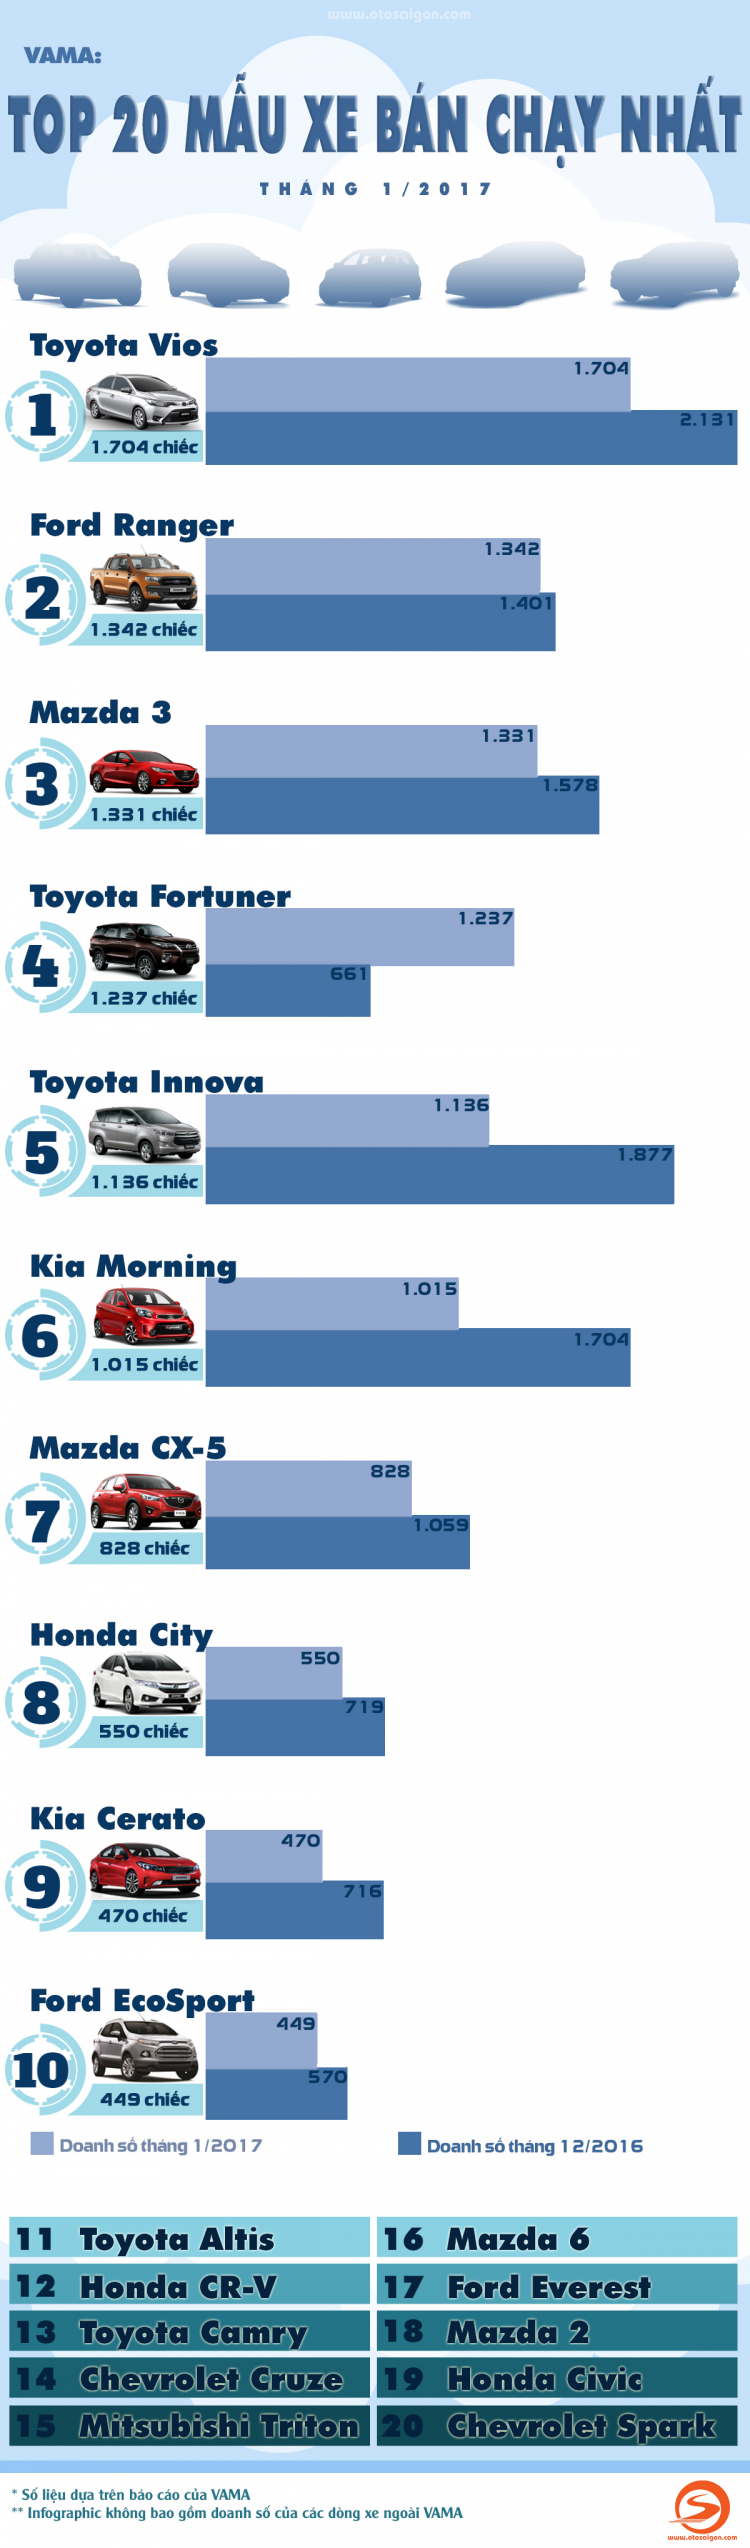 [Infographic] Top 20 xe bán chạy nhất tháng 1/2017